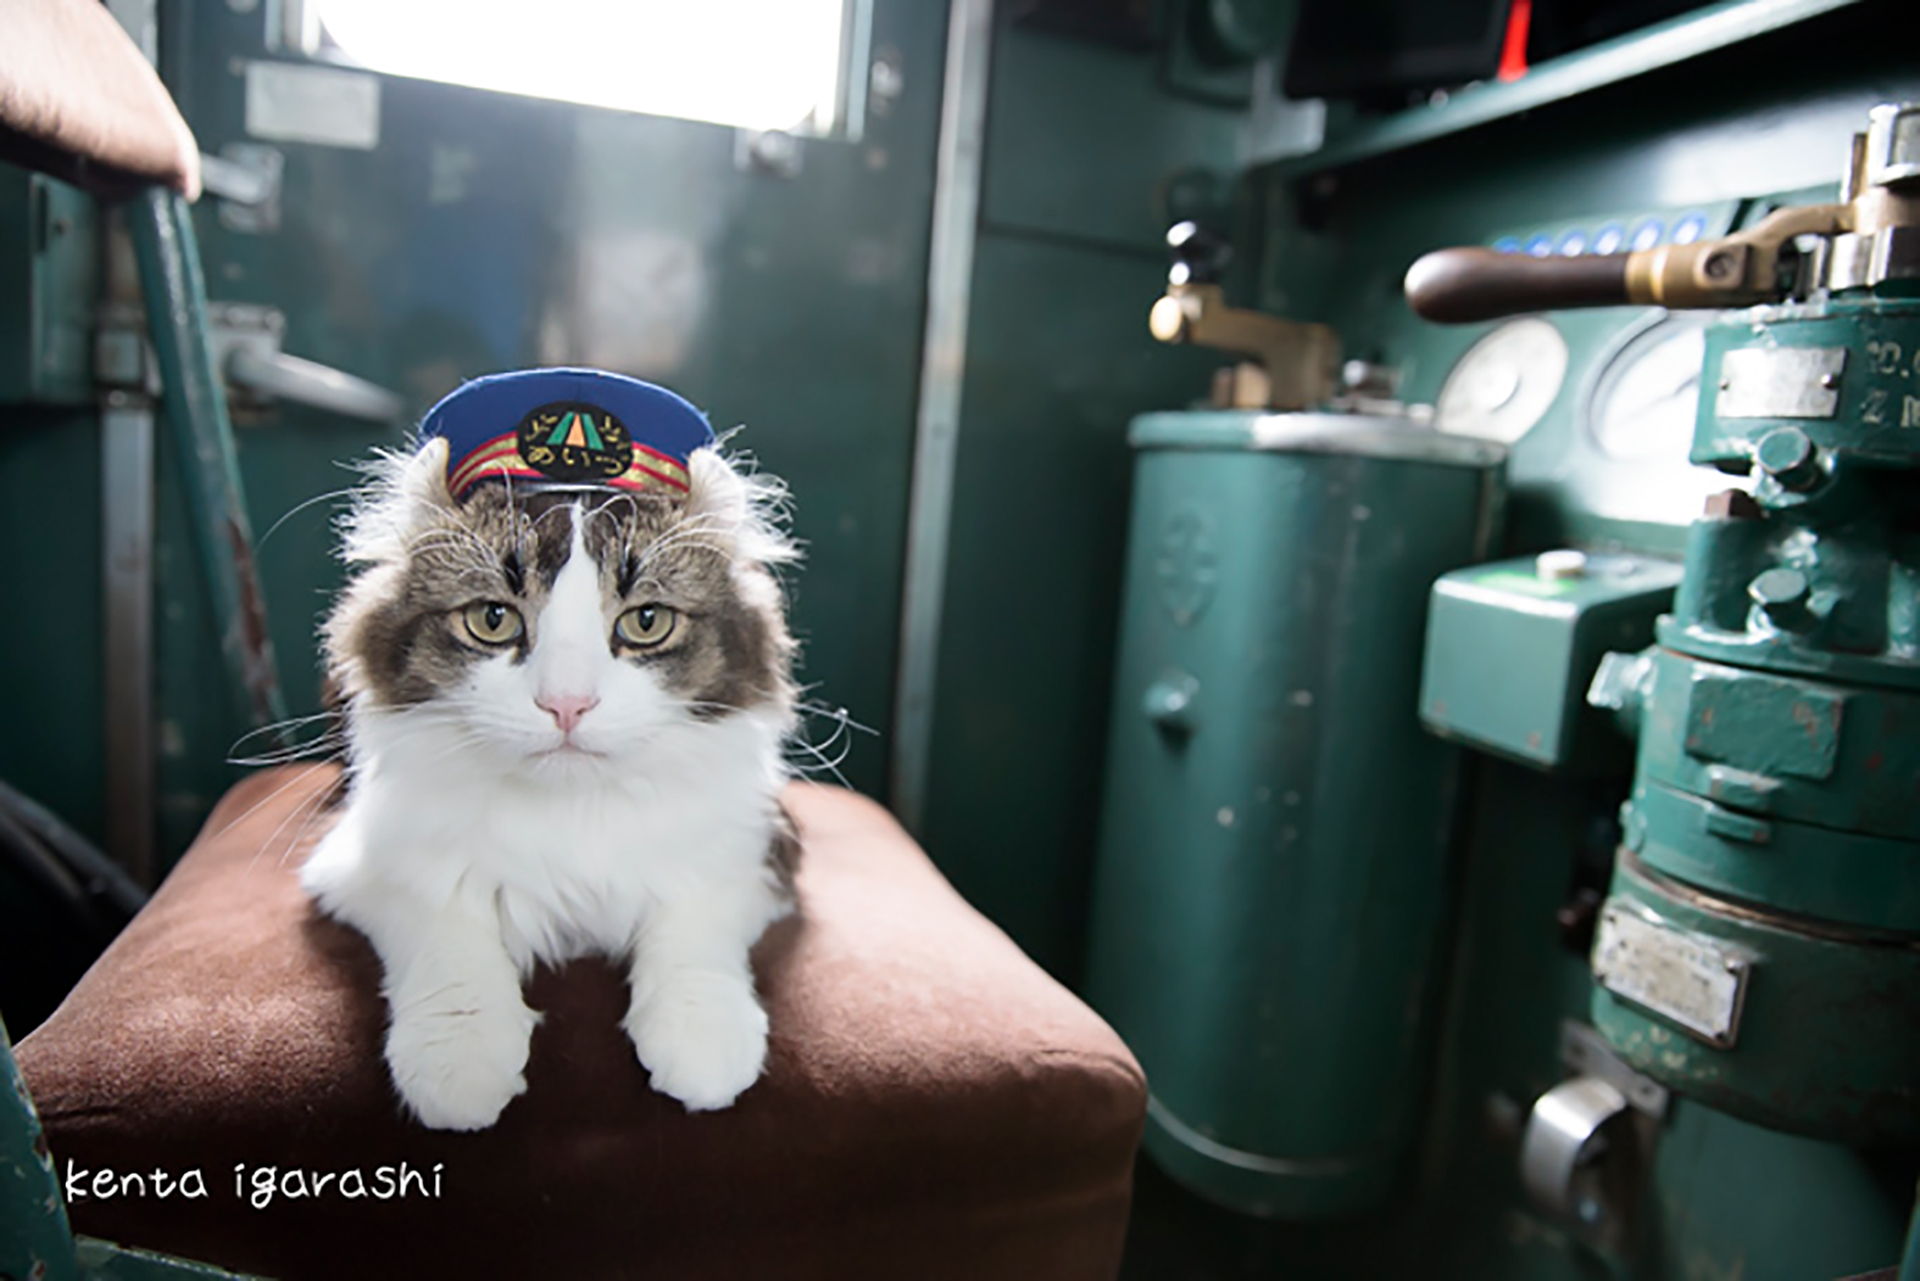 この写真は猫が電車の運転手なったところ